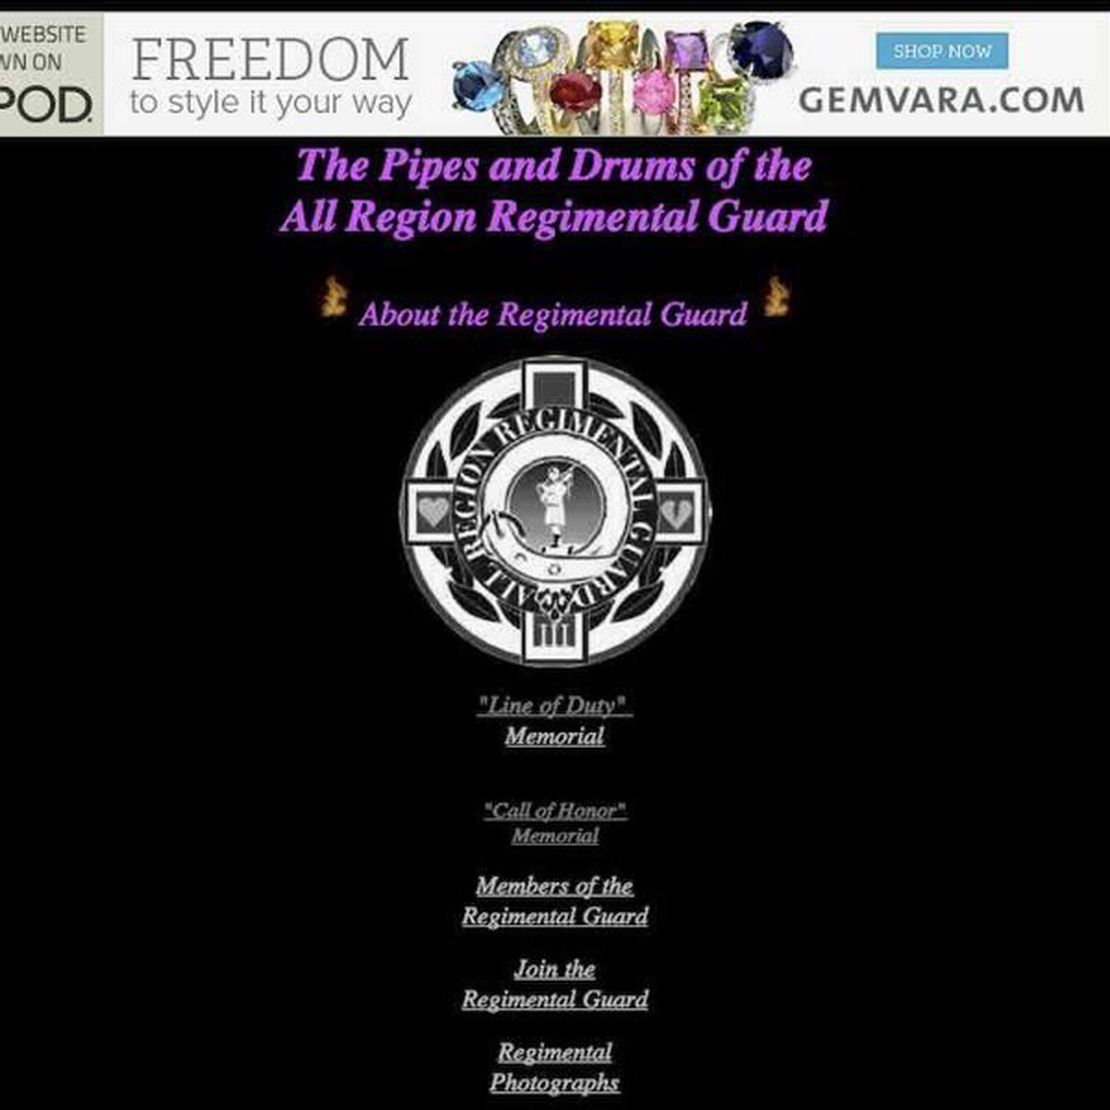 all region regimental guard